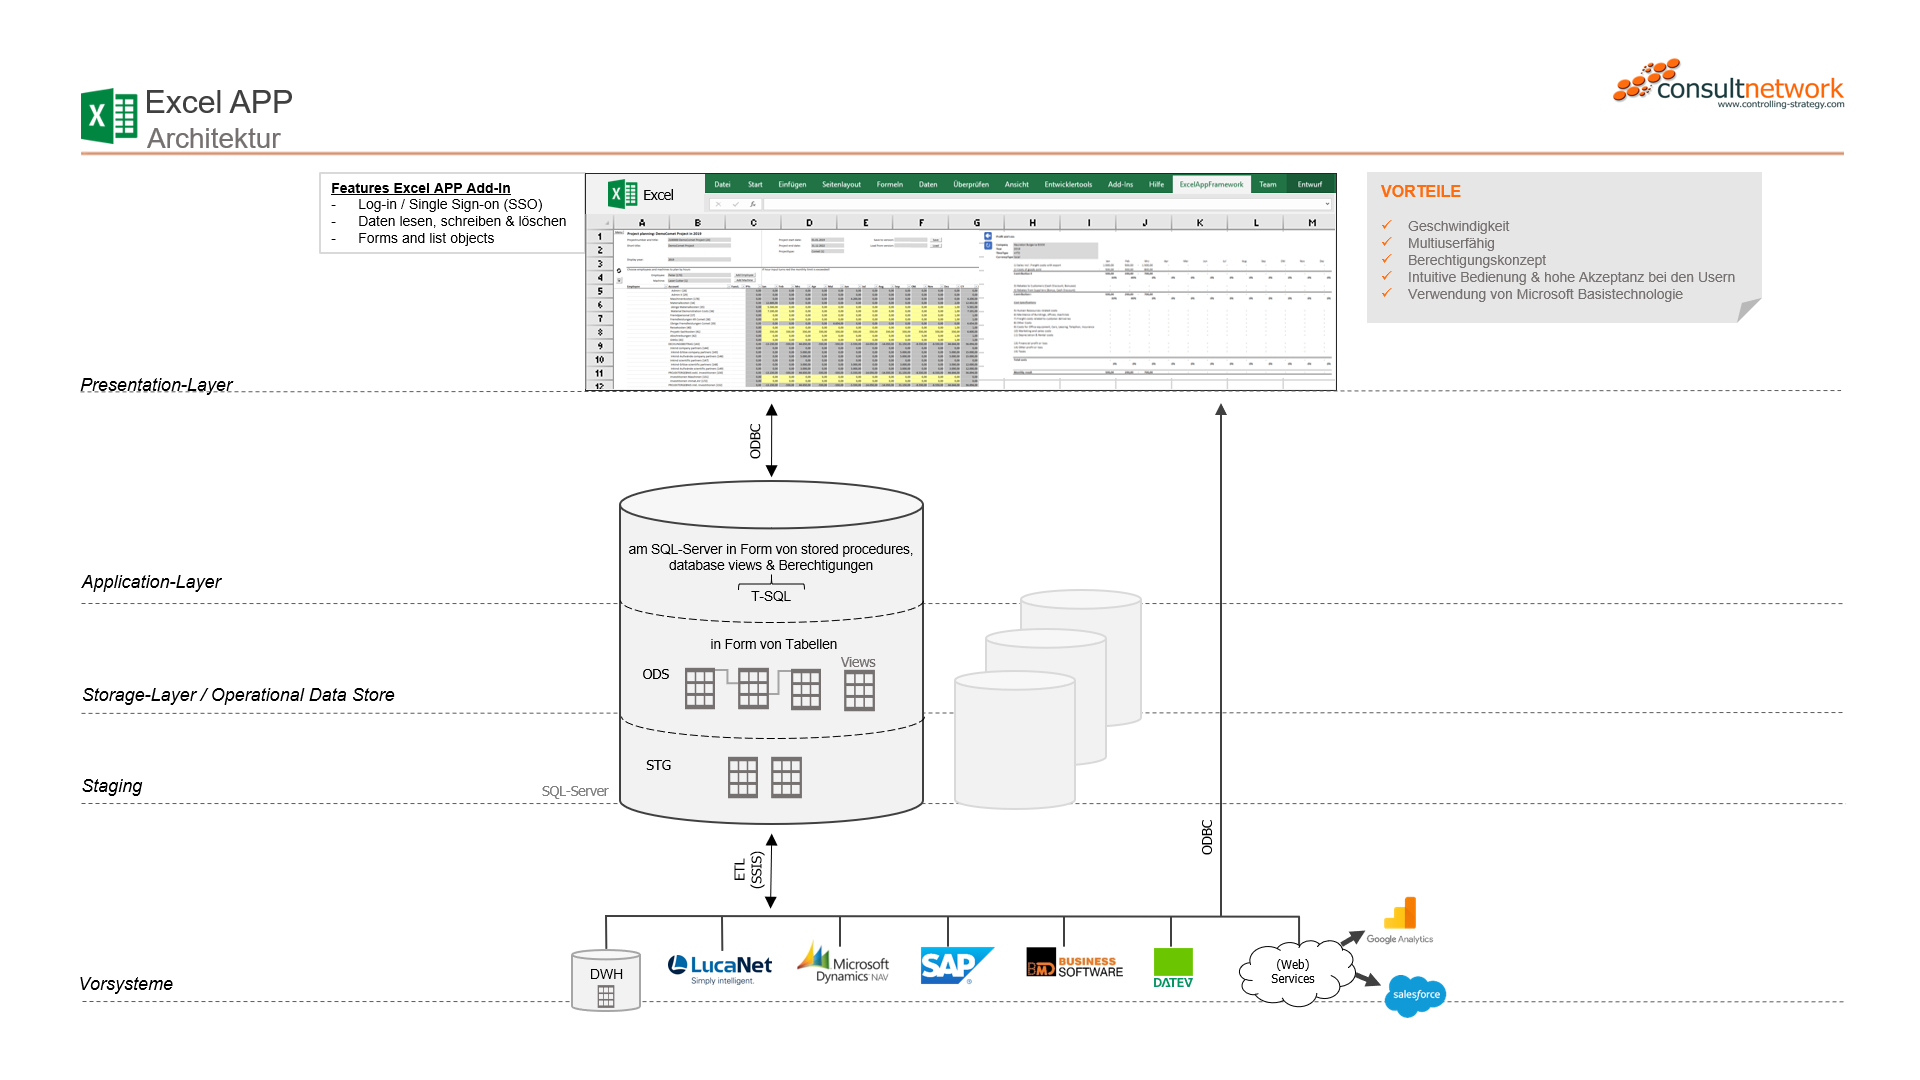 Architekturschaubild der Excel APP von consultnetwork